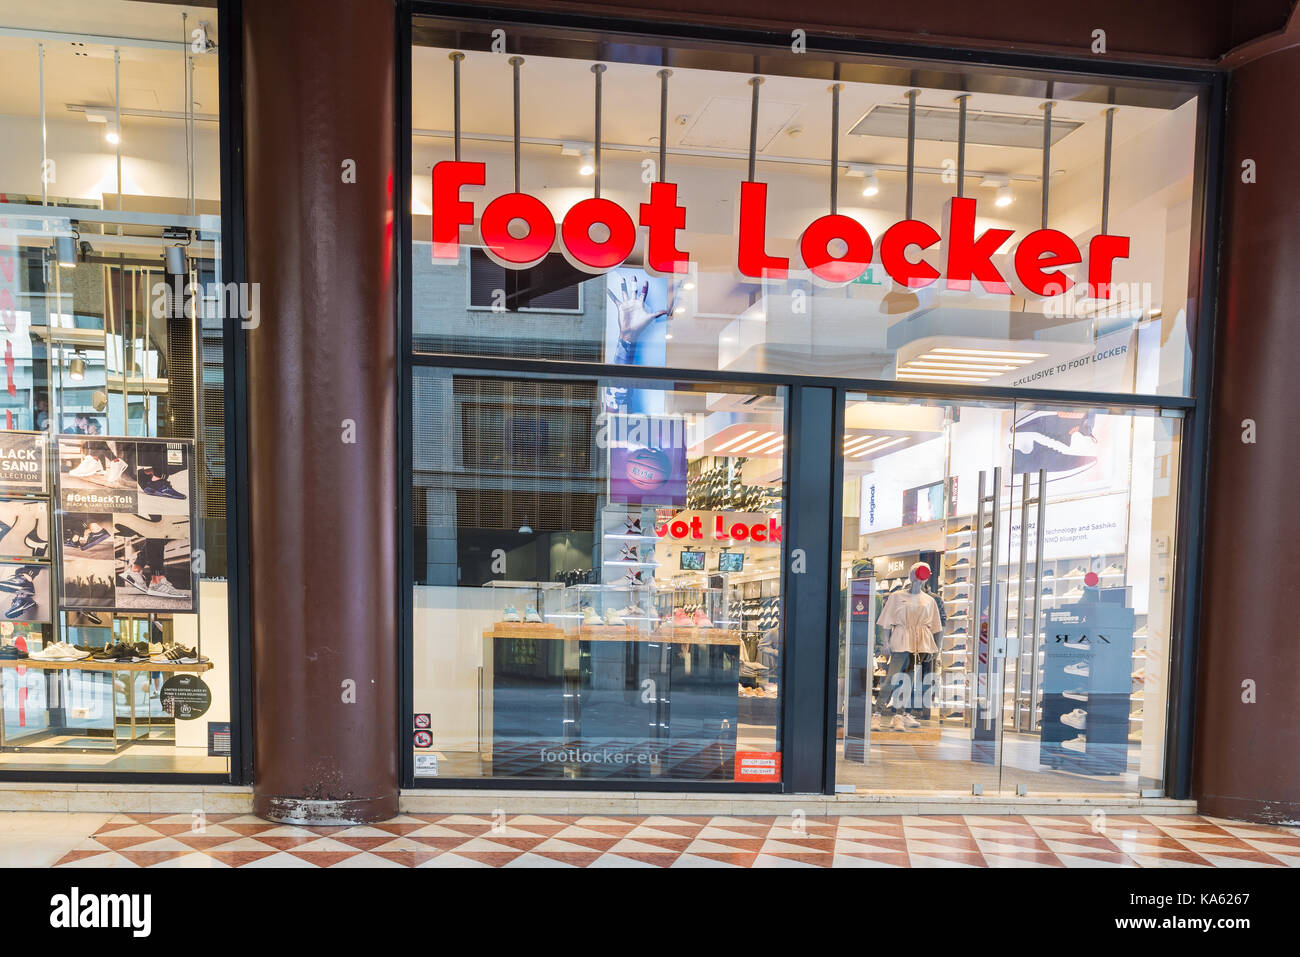 Mailand, Italien - 10 August 2017: Foot Locker Stores in Corso Vittorio Emanuele Ii in der Nähe der Piazza Duomo, Sportswear und Schuhe Einzelhändler. Konzept der shopp Stockfoto